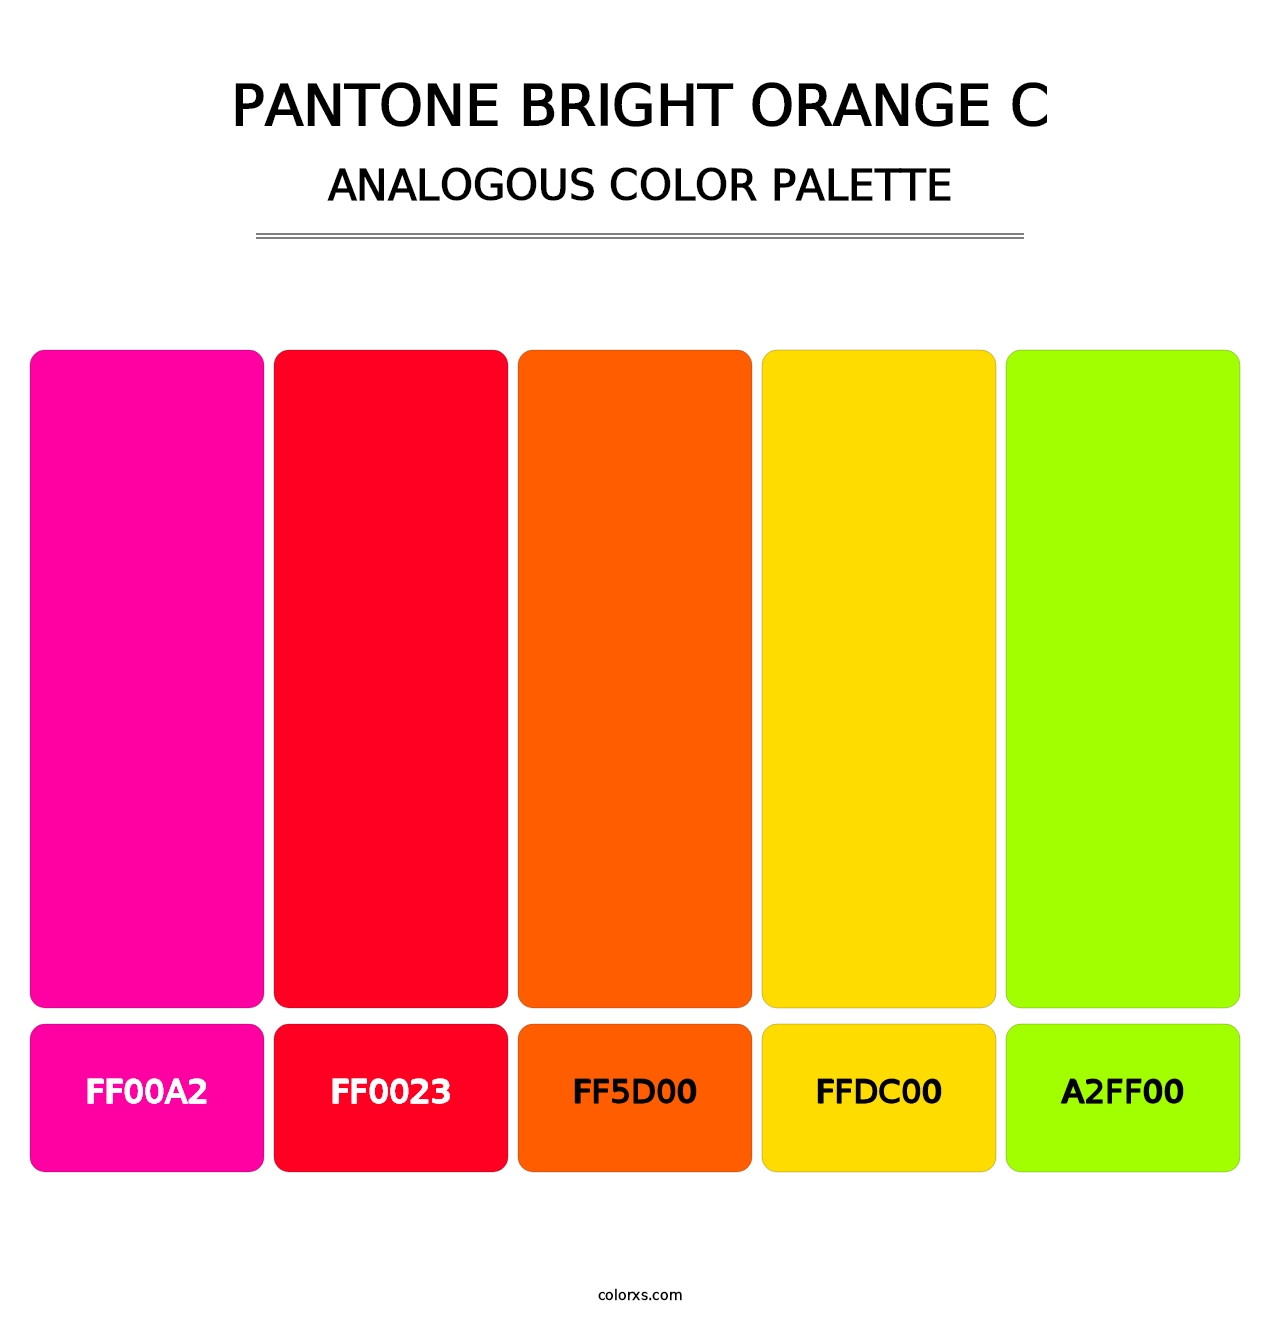 PANTONE Bright Orange C - Analogous Color Palette